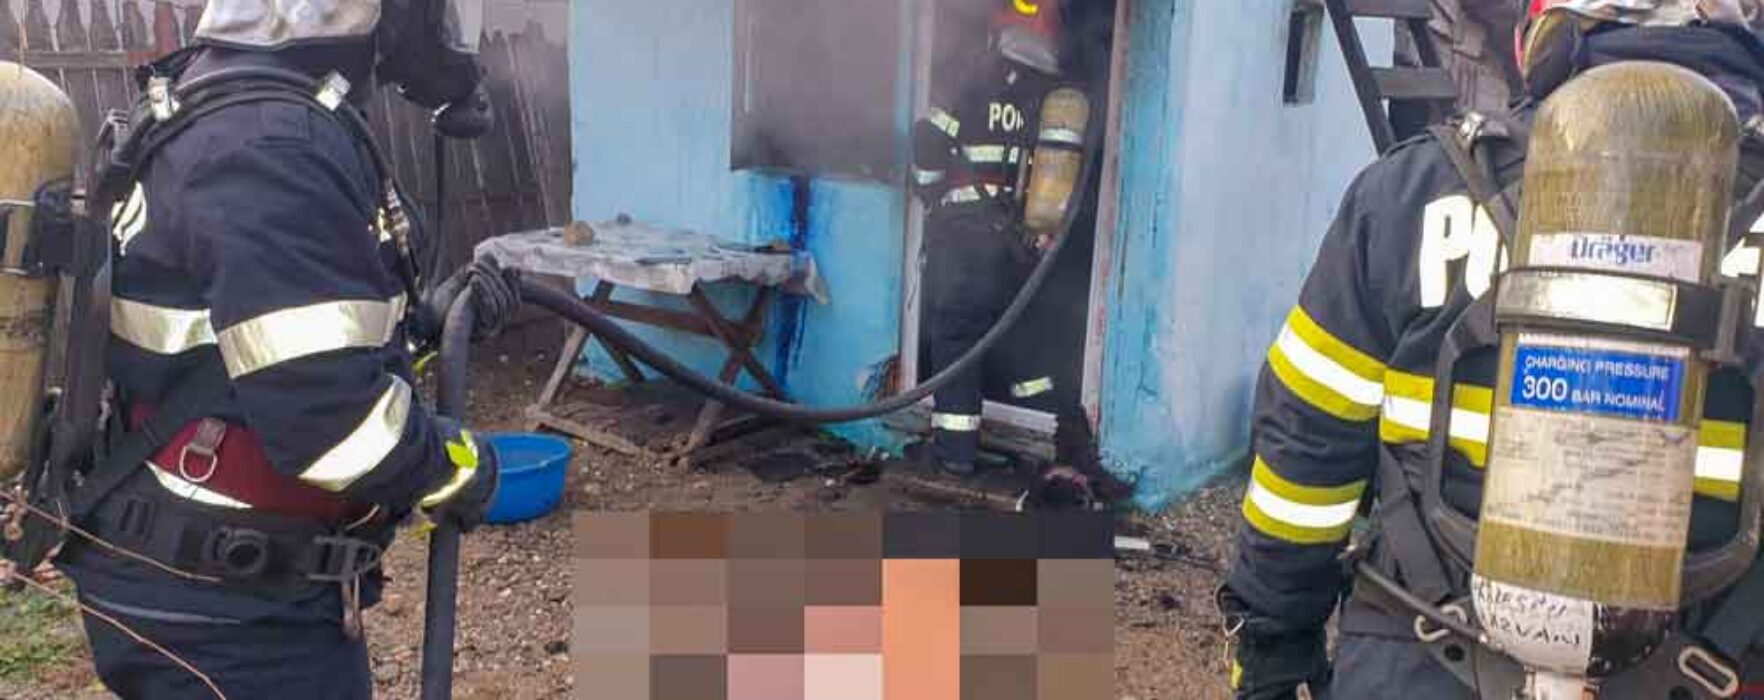 Dâmboviţa: Incendiu la o casă din Drăgăeşti Pământeni, bătrân de 95 de ani găsit mort